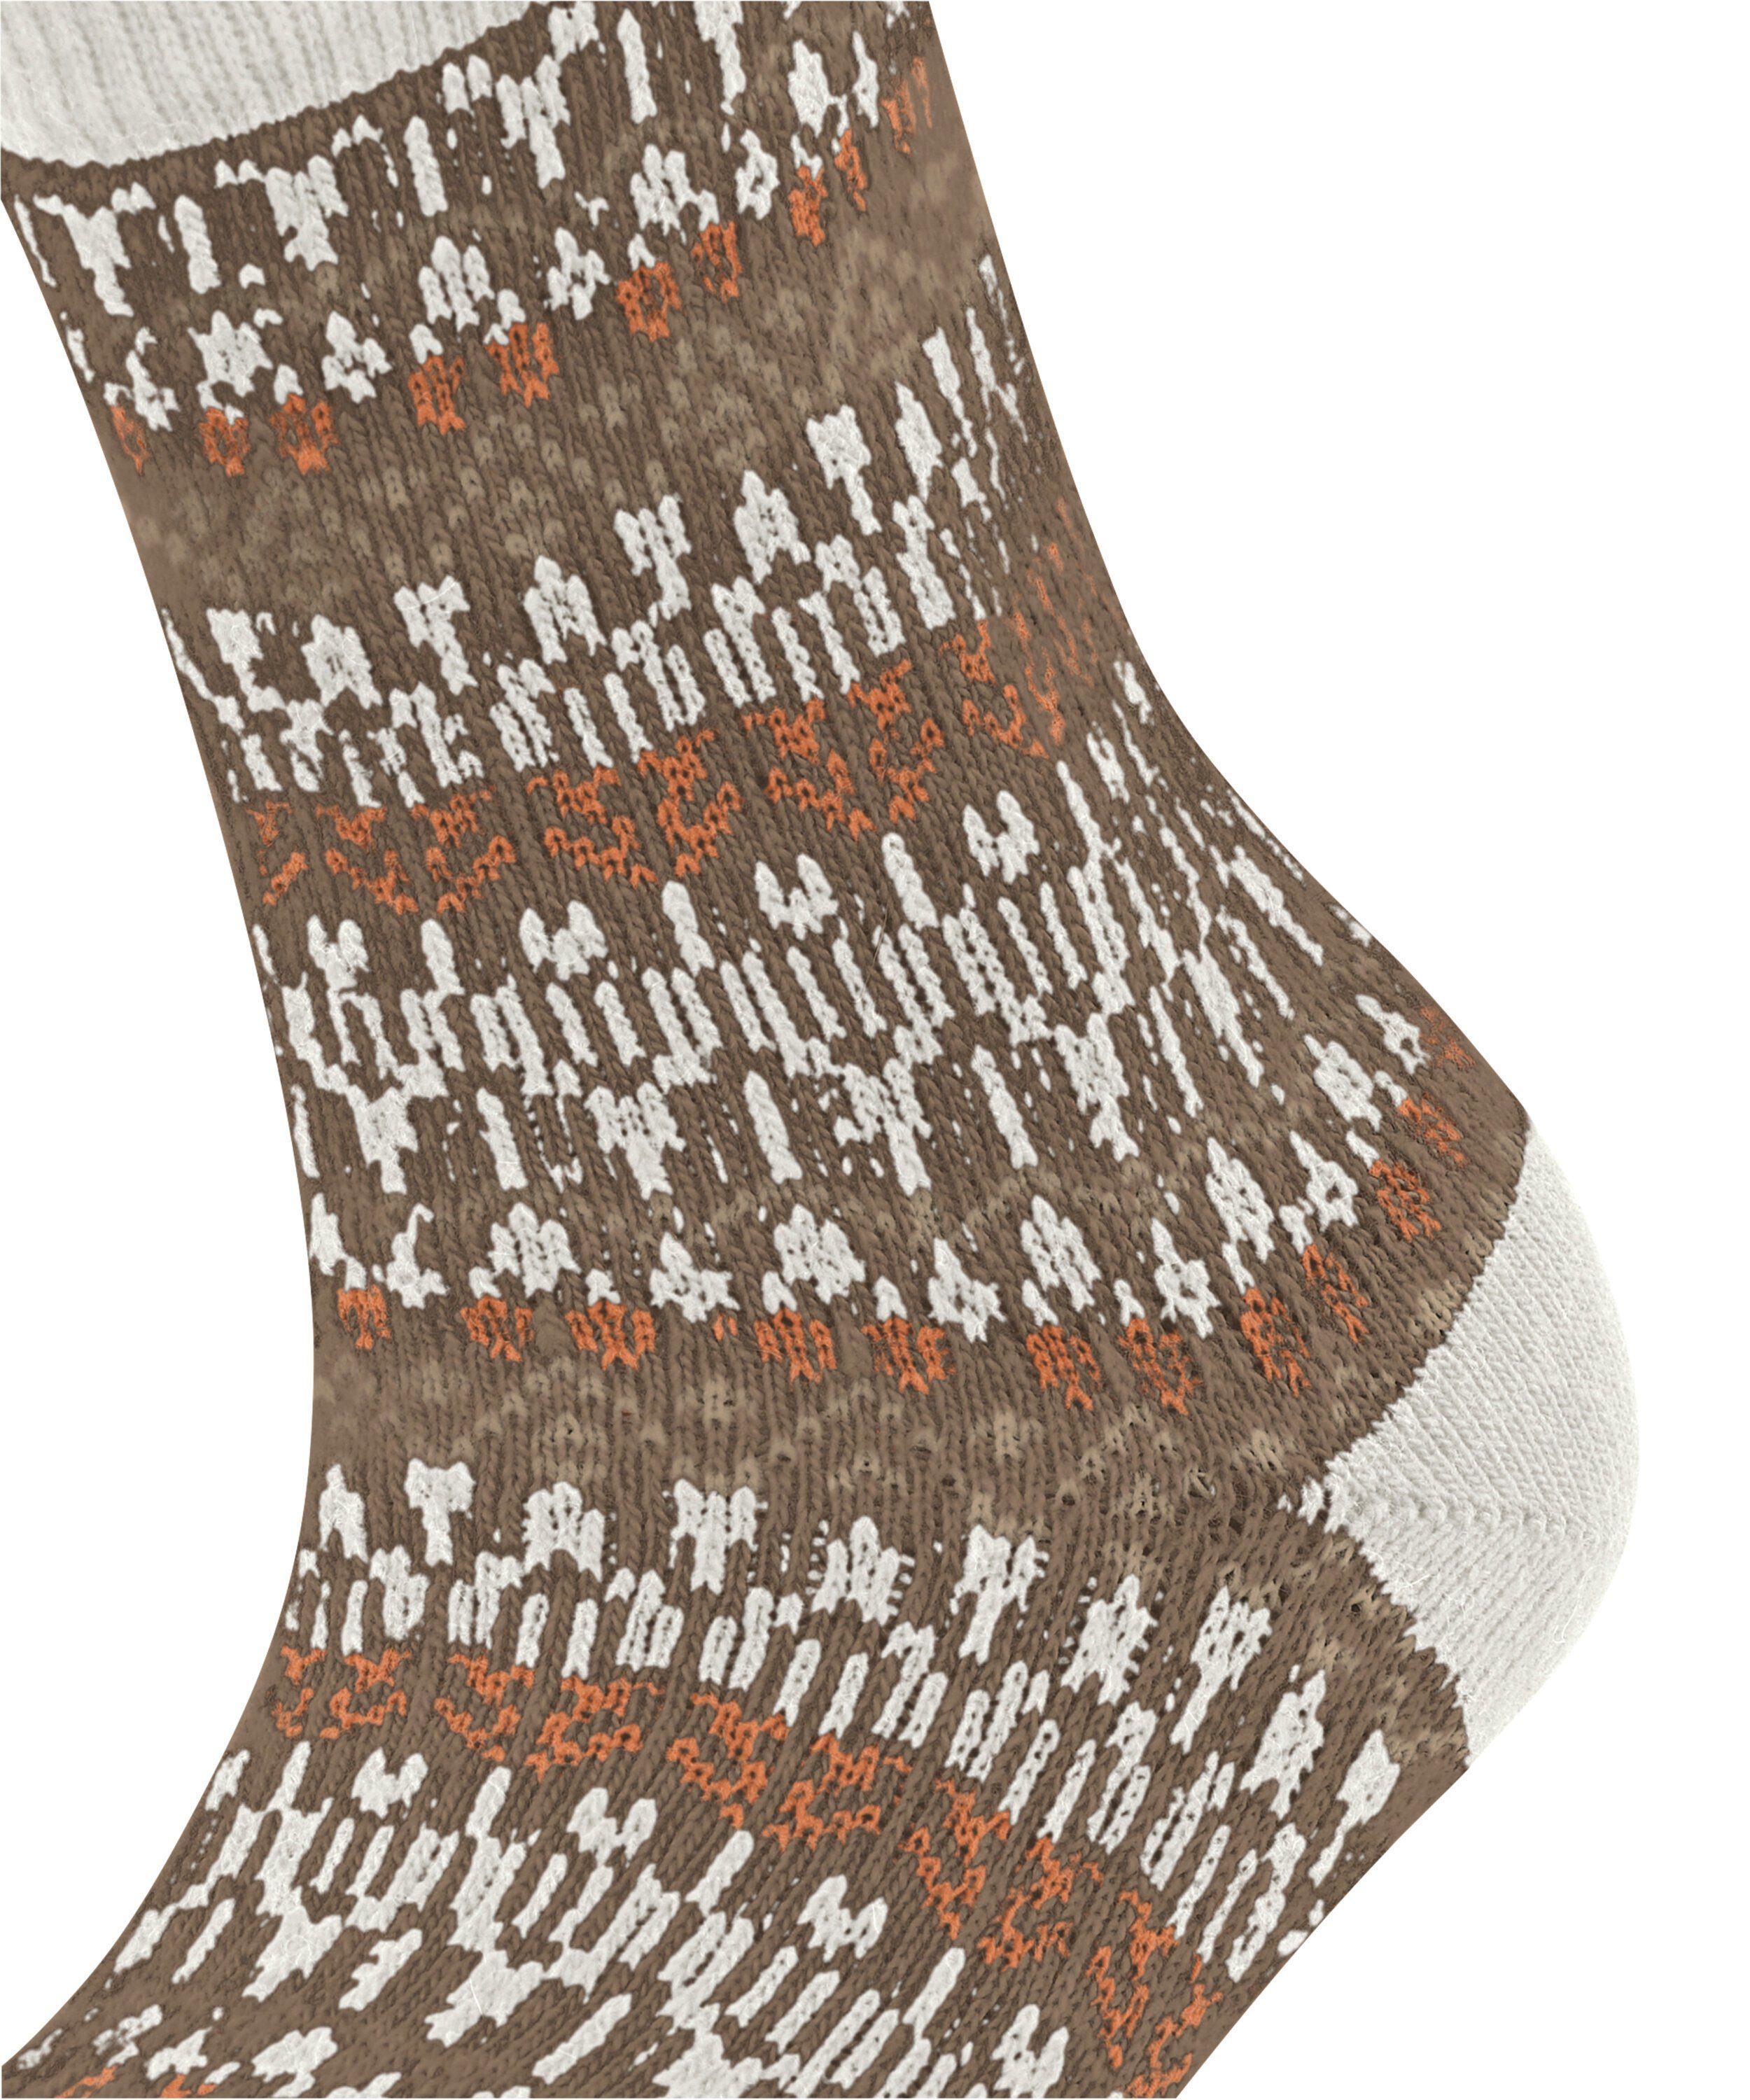 Socken FALKE off-white (1-Paar) (2040) Christmas Eve